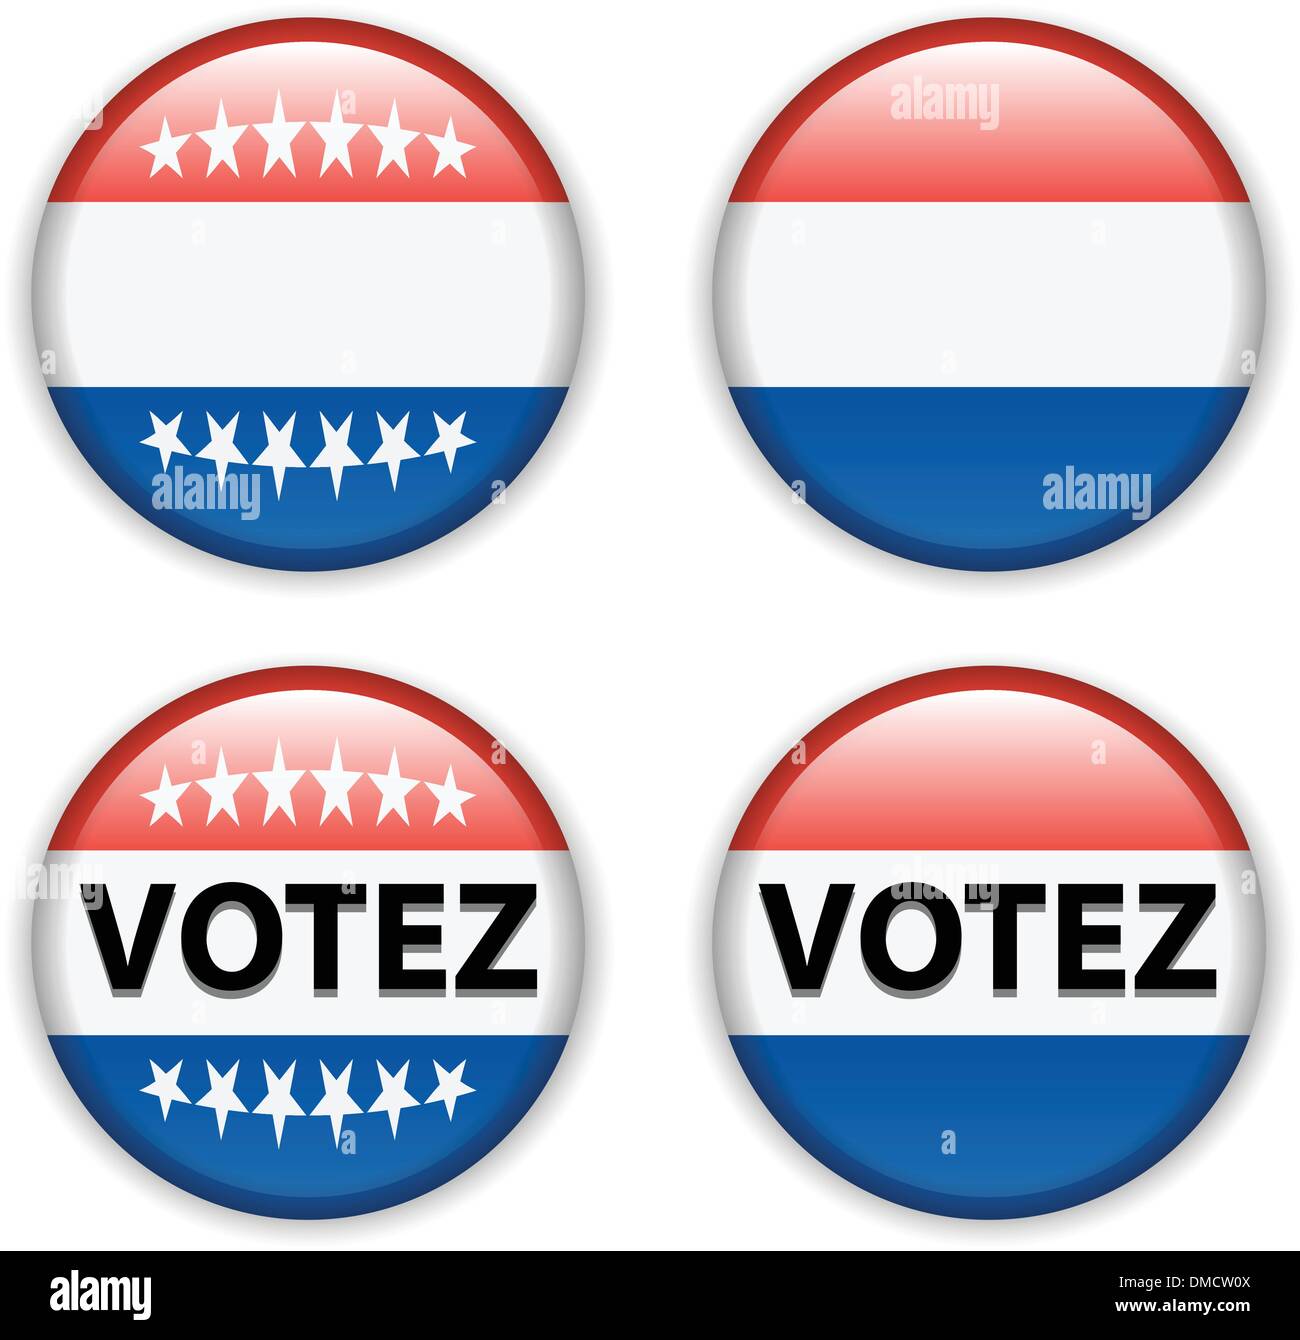 Vote vide bouton badge pour la France et l'élection présidentielle française Illustration de Vecteur